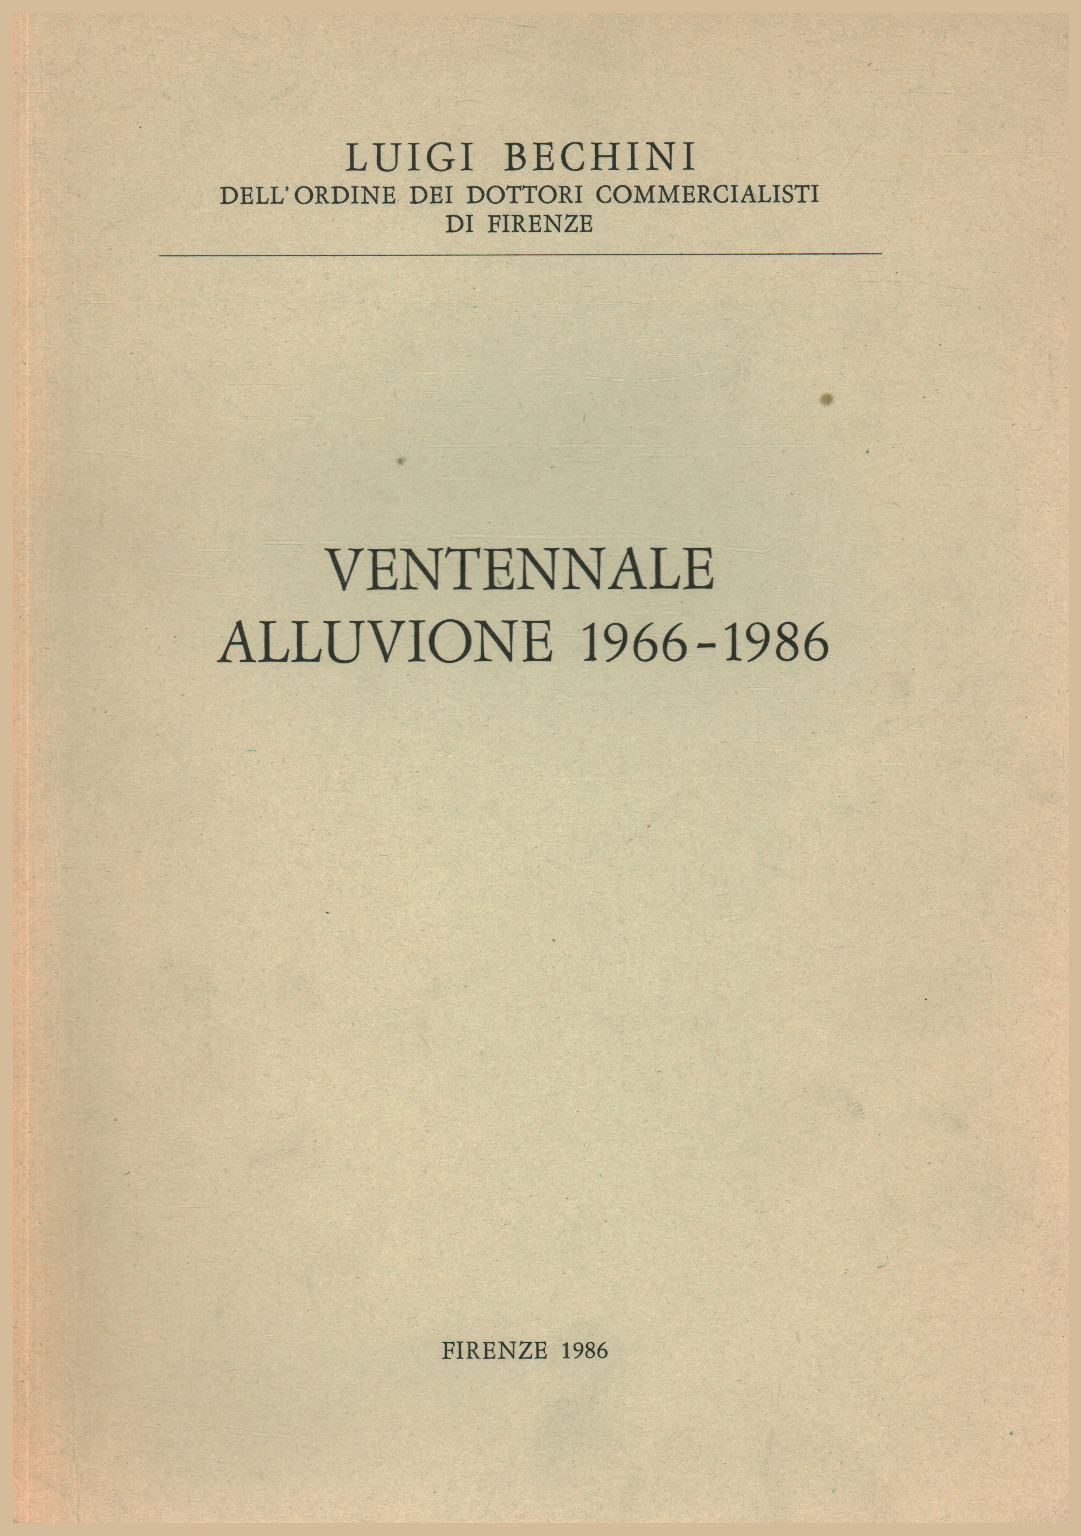 Ventennale alluvione 1966-1986, s.a.